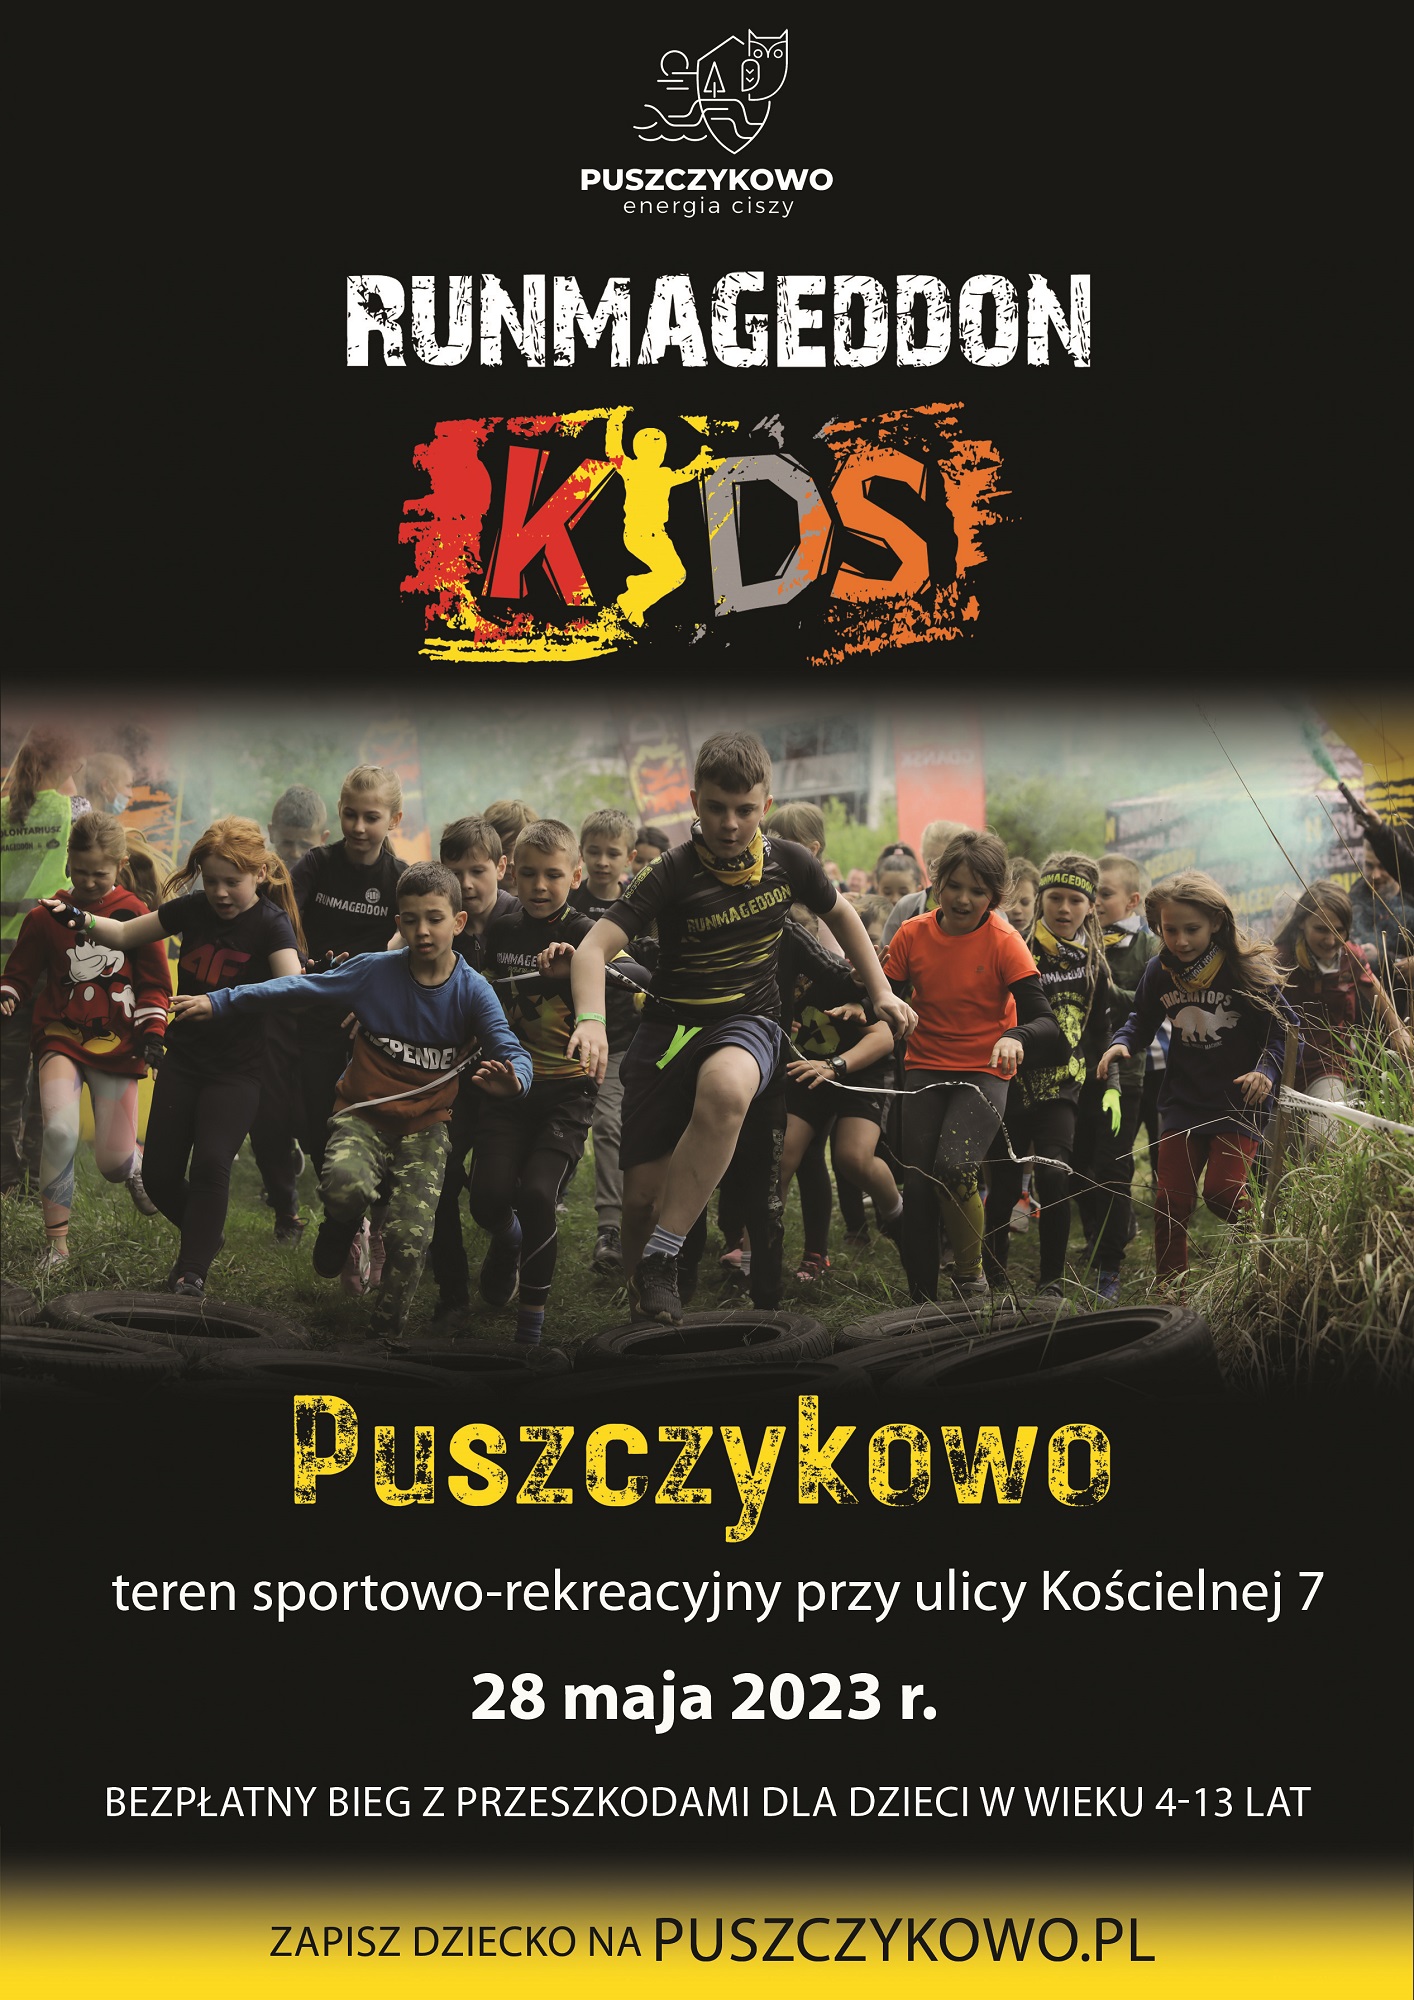 Zapraszamy najmłodszych mieszkańców Puszczykowa lub dzieci uczęszczające do puszczykowskich placówek oświatowych do udziału w Runmageddon Kids, czyli specjalnie dostosowanej dziecięcej wersji najbardziej ekstremalnego biegu przeszkodowego.